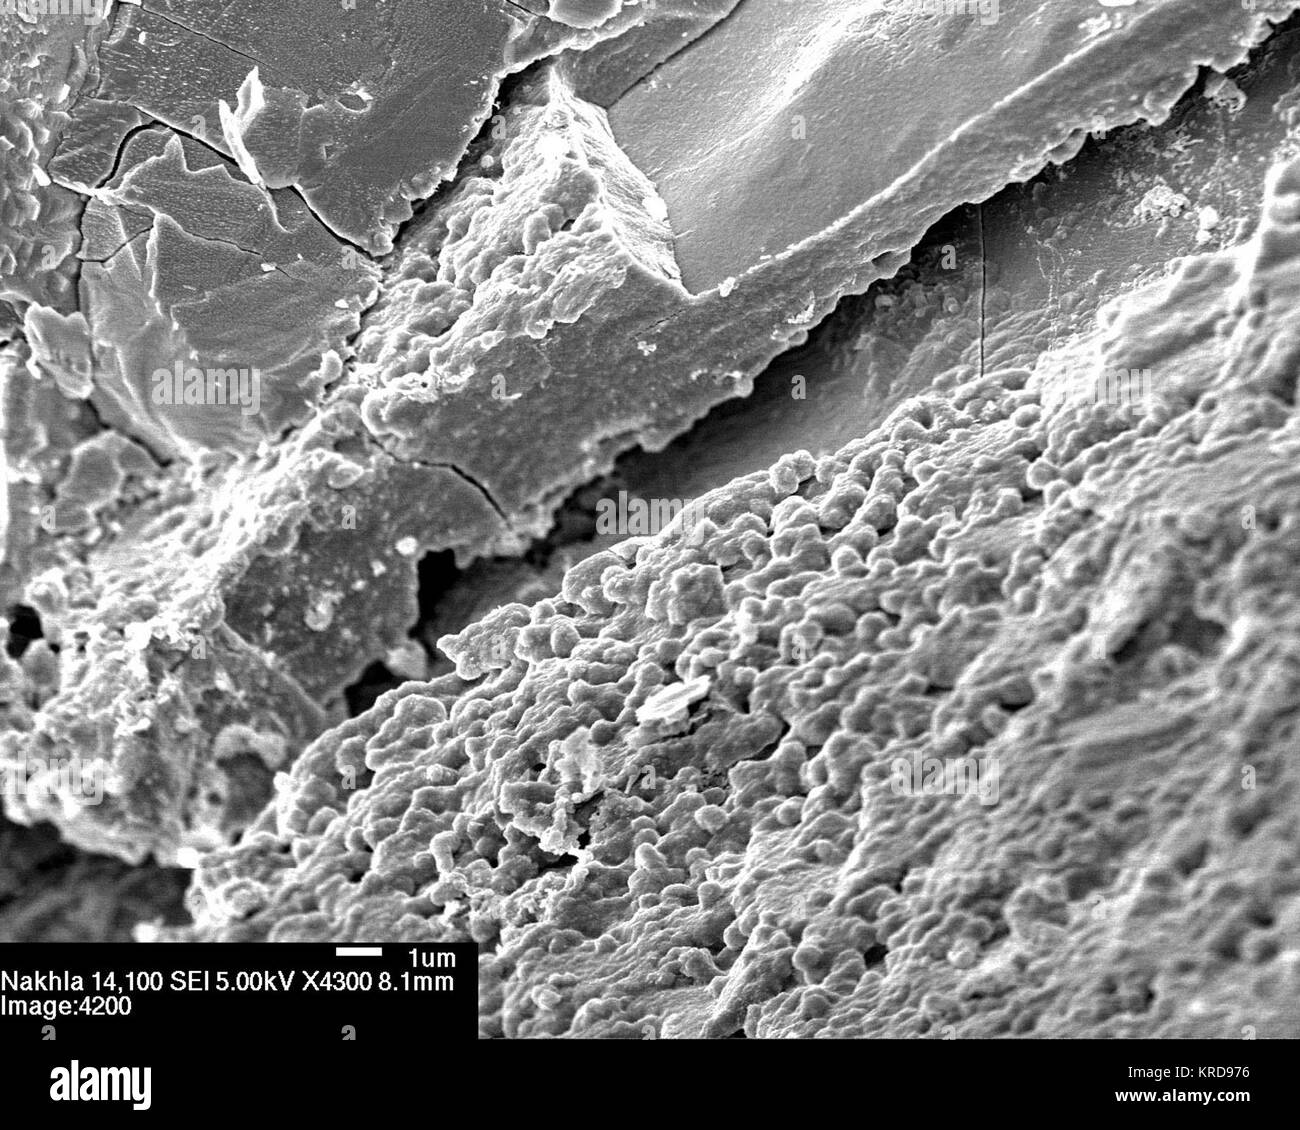 Nakhla - 4200e-1 plusieurs couches de remplissage crack exposés lorsque une puce de Nakhla a été examiné au microscope électronique à balayage. Une couche a une surface très cahoteuse, et ces bosses ressemblent à une colonie d'microbacteria fossilisés. Certains des bosses arrondies sont préservés dans le haut de la surface et de ressembler à personne et sphériques ovoïdes-microbes en forme. D'autres sont partiellement intégrés dans la matrice sous-jacente. 407307jsc2009E243550 principal Banque D'Images